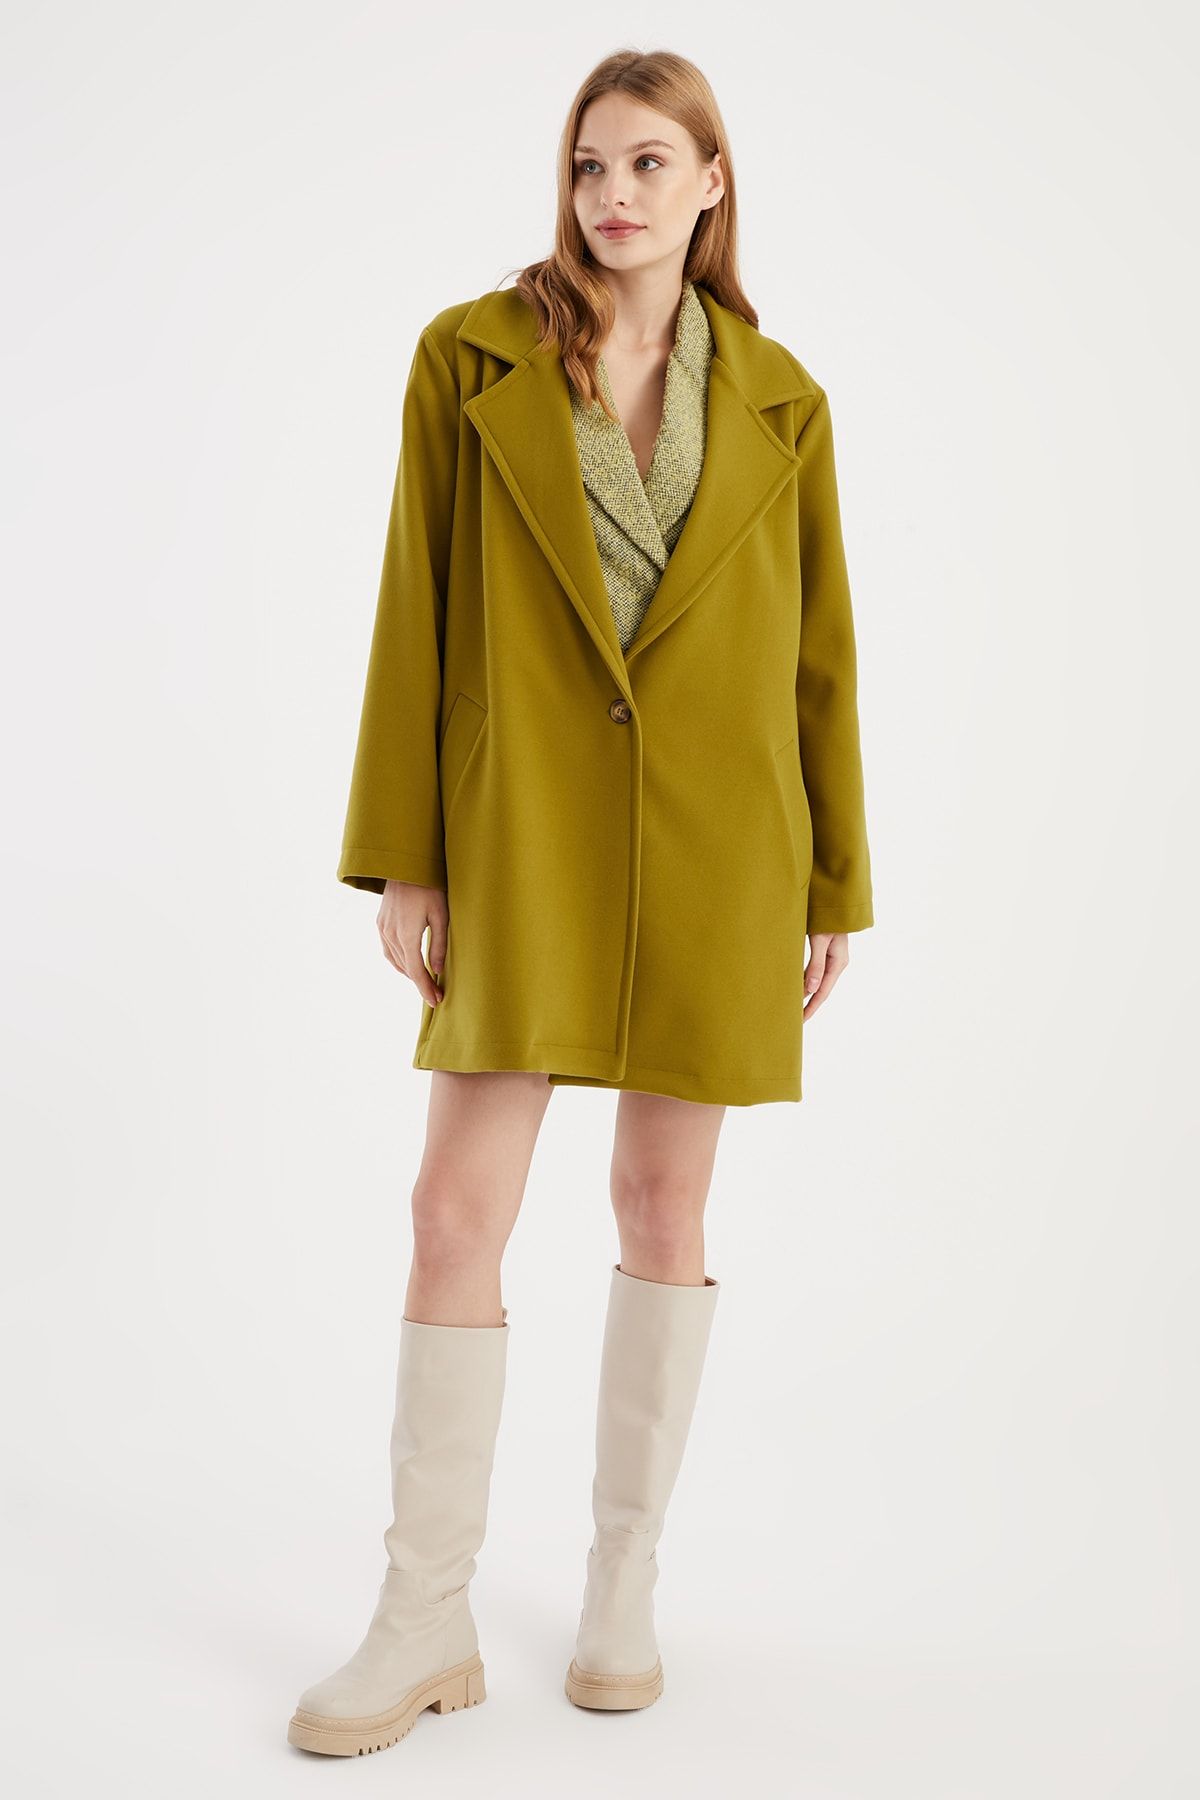 Hanna's Kadın Yeşil Klasik Yakalı Iki Cepli Astarlı Palto